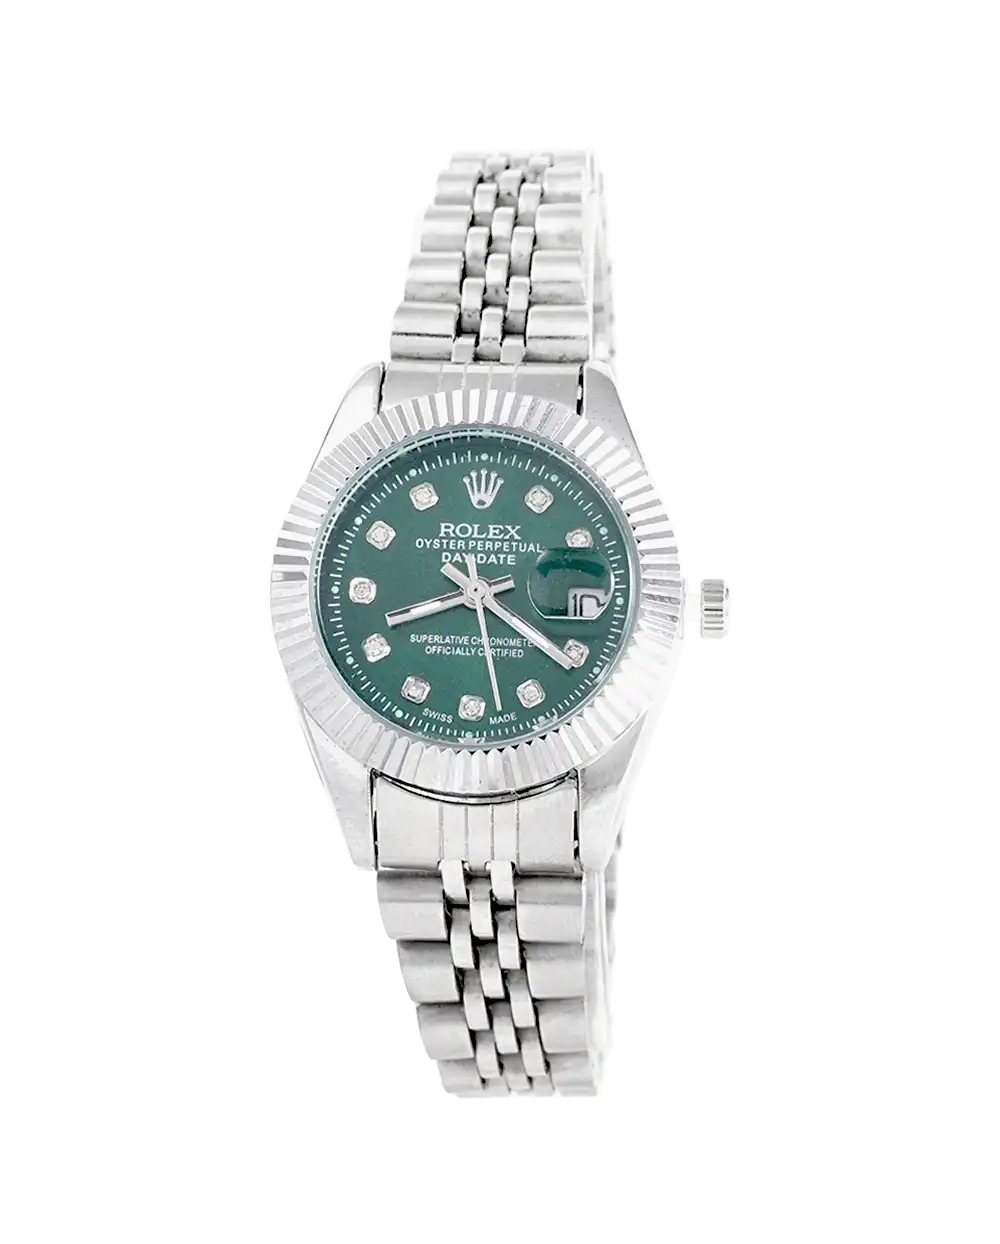 خرید ساعت مچی زنانه رولکس ROLEX طرح دیت جاست مدل 1656 صفحه سبز با بهترین قیمت به همراه ارسال رایگان به سراسر ایران و جعبه ی مخصوص کادو